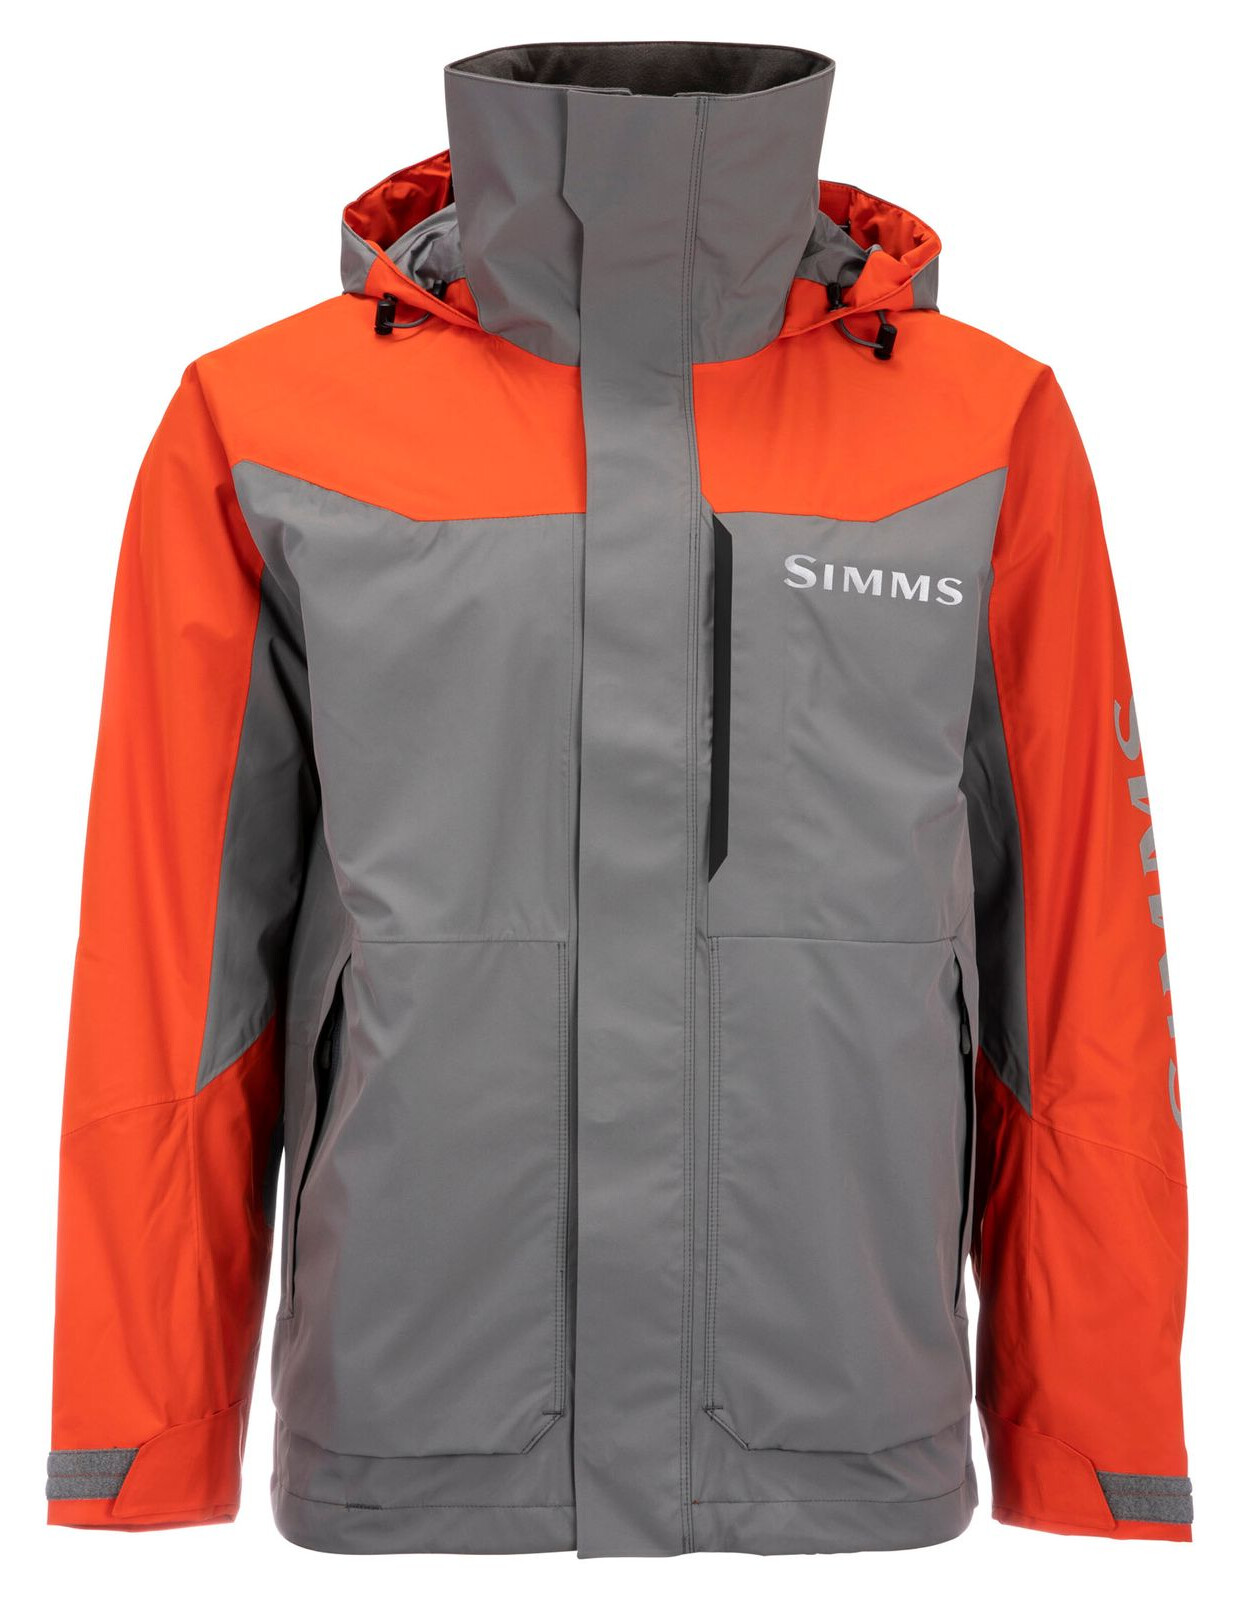 Simms Women's Challenger Jacket, Waterproof Fishing Gear